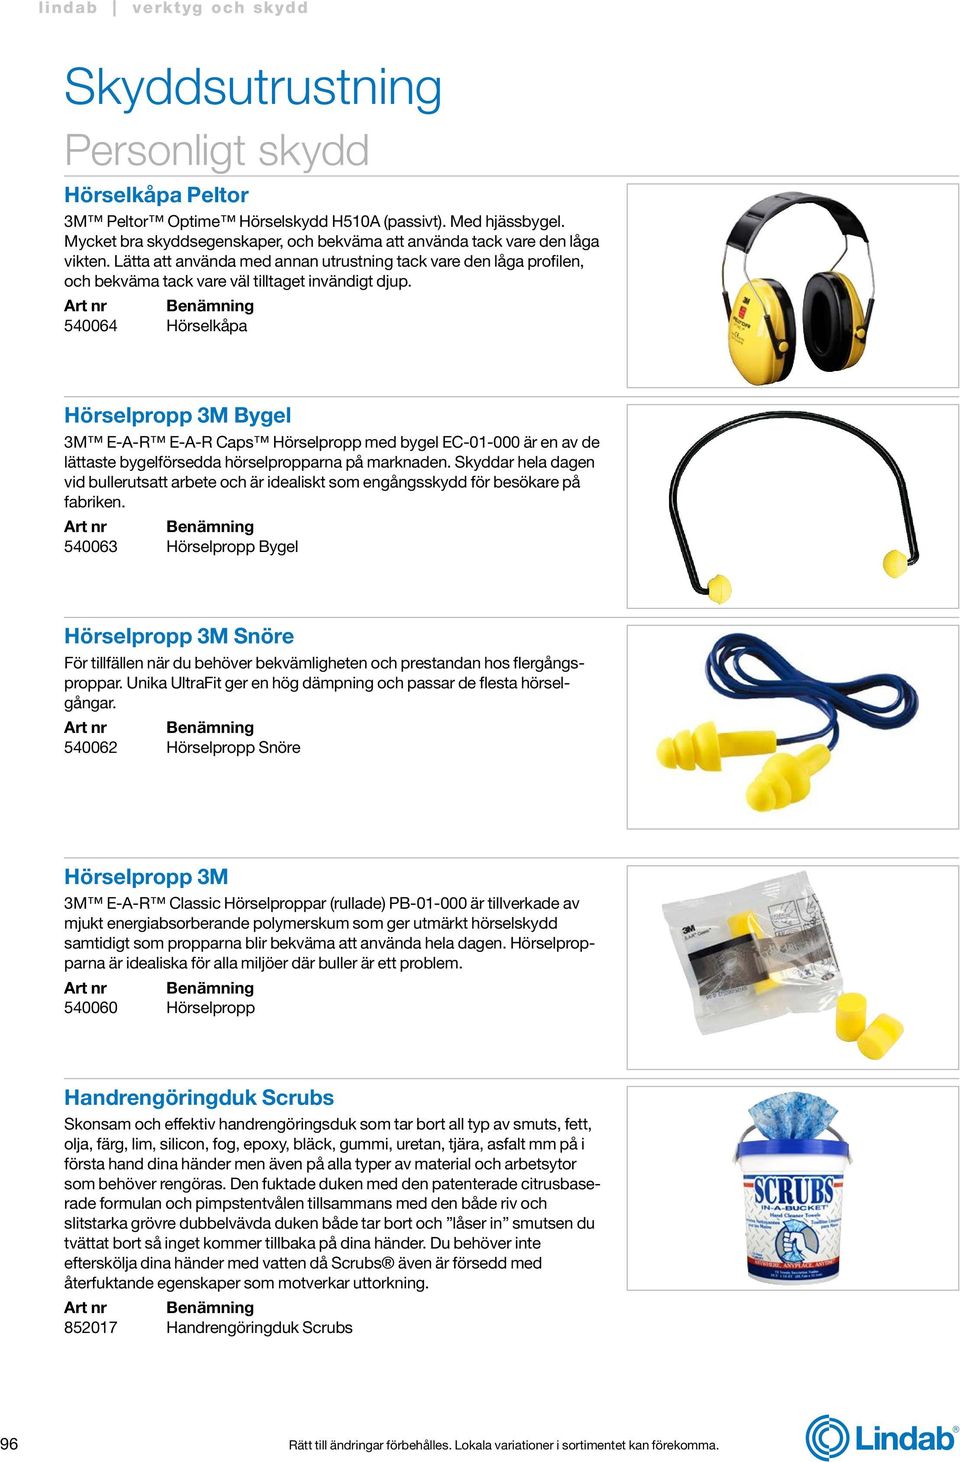 540064 Hörselkåpa Hörselpropp 3M Bygel 3M E-A-R E-A-R Caps Hörselpropp med bygel EC-01-000 är en av de lättaste bygelförsedda hörselpropparna på marknaden.